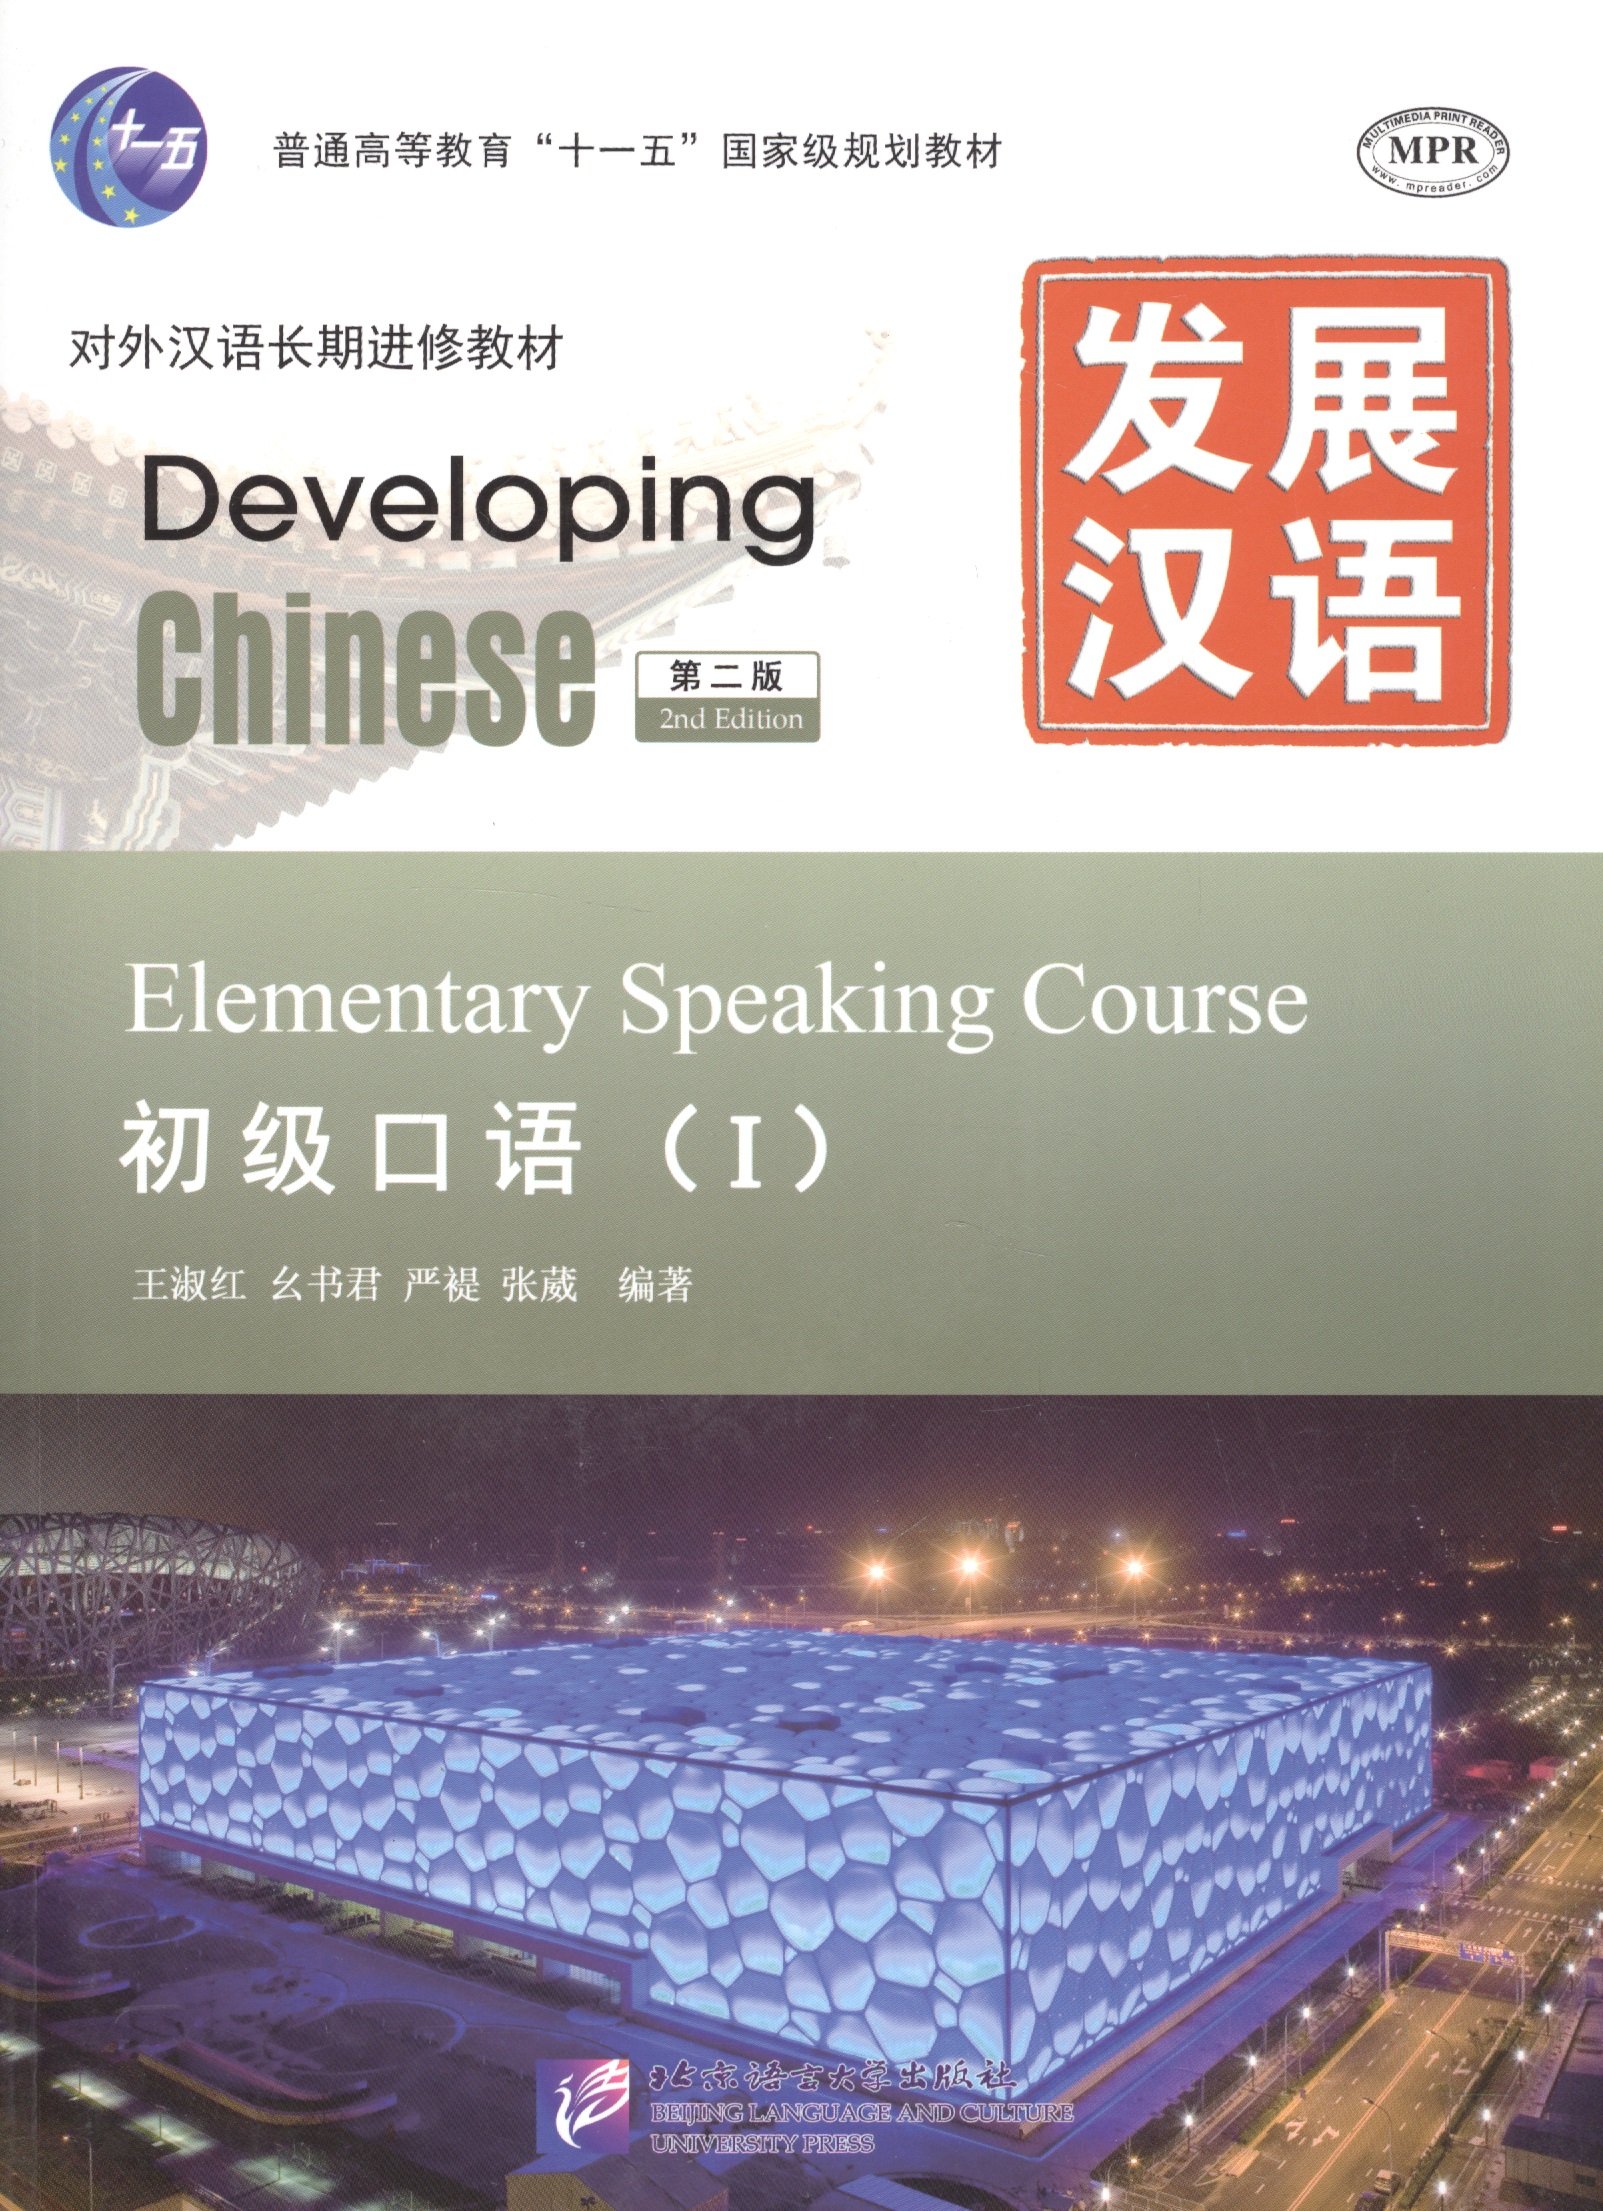 Wang Shu Hong, Yan Ti Yao Shu Jun, Zhang Wei - Developing Chinese: Elementary 1 (2nd Edition) Speaking Course (+MP3) / Развивая китайский. Второе издание. Начальный уровень. Часть 1. Курс говорения +MP3